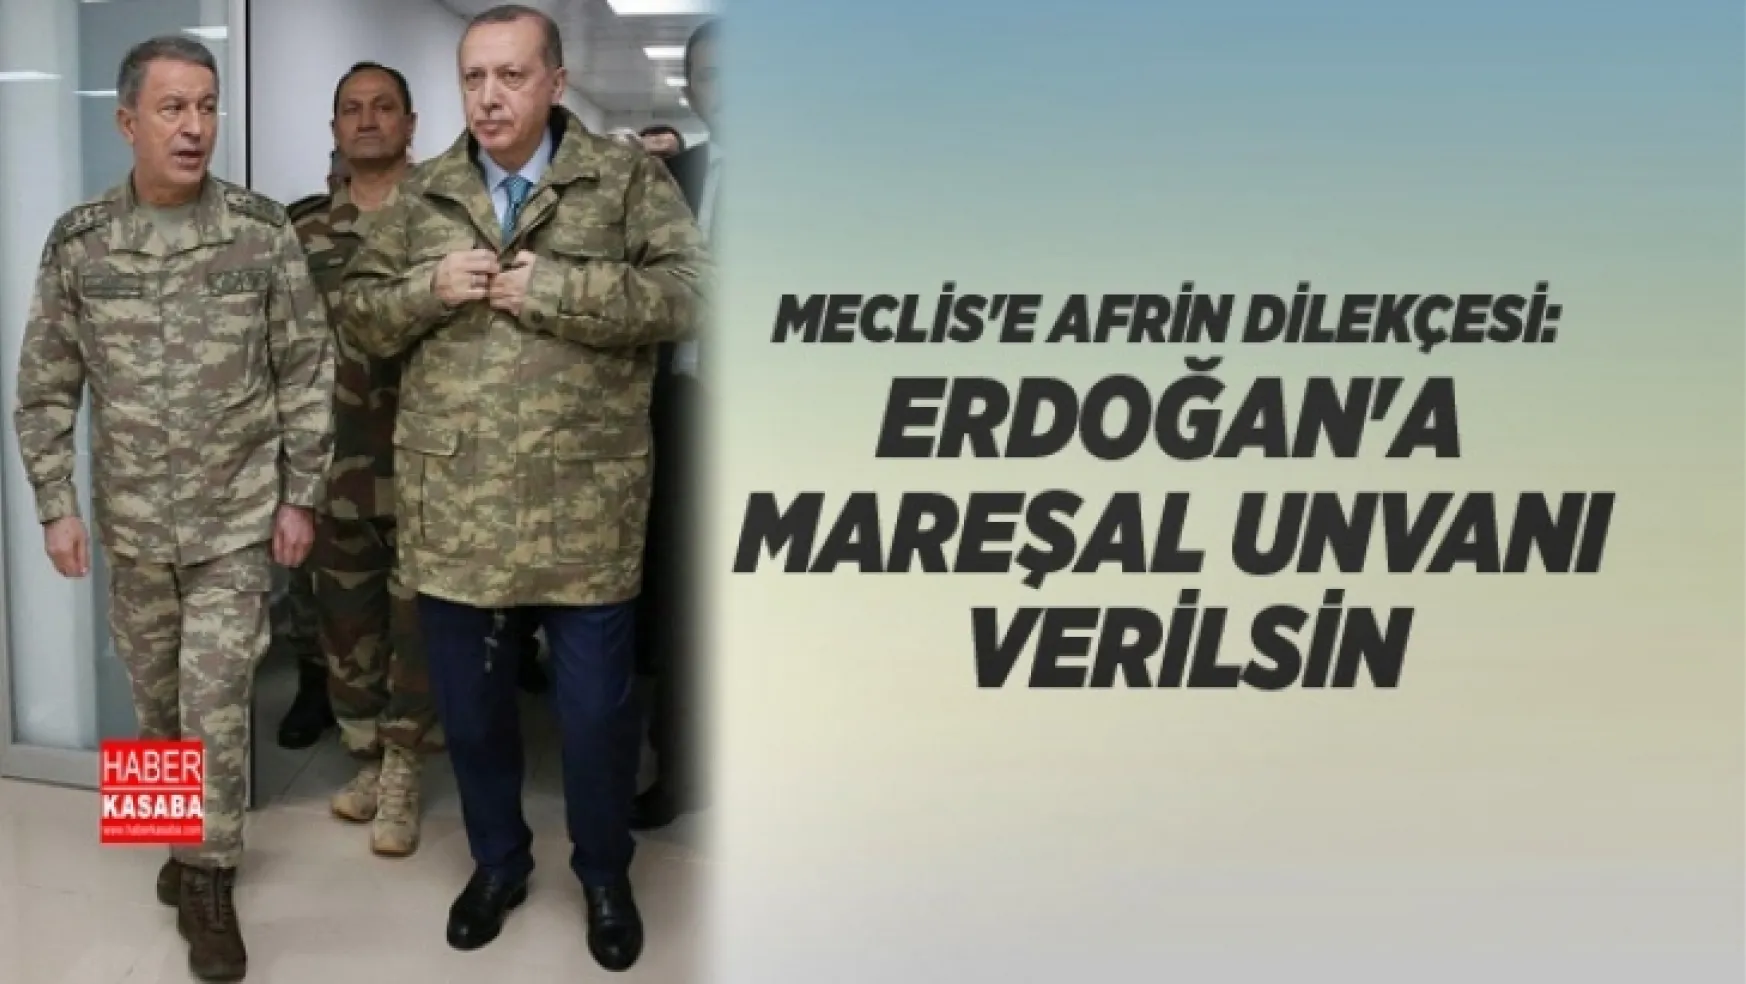 Cumhurbaşkanı Erdoğan'a mareşal unvanı verilsin